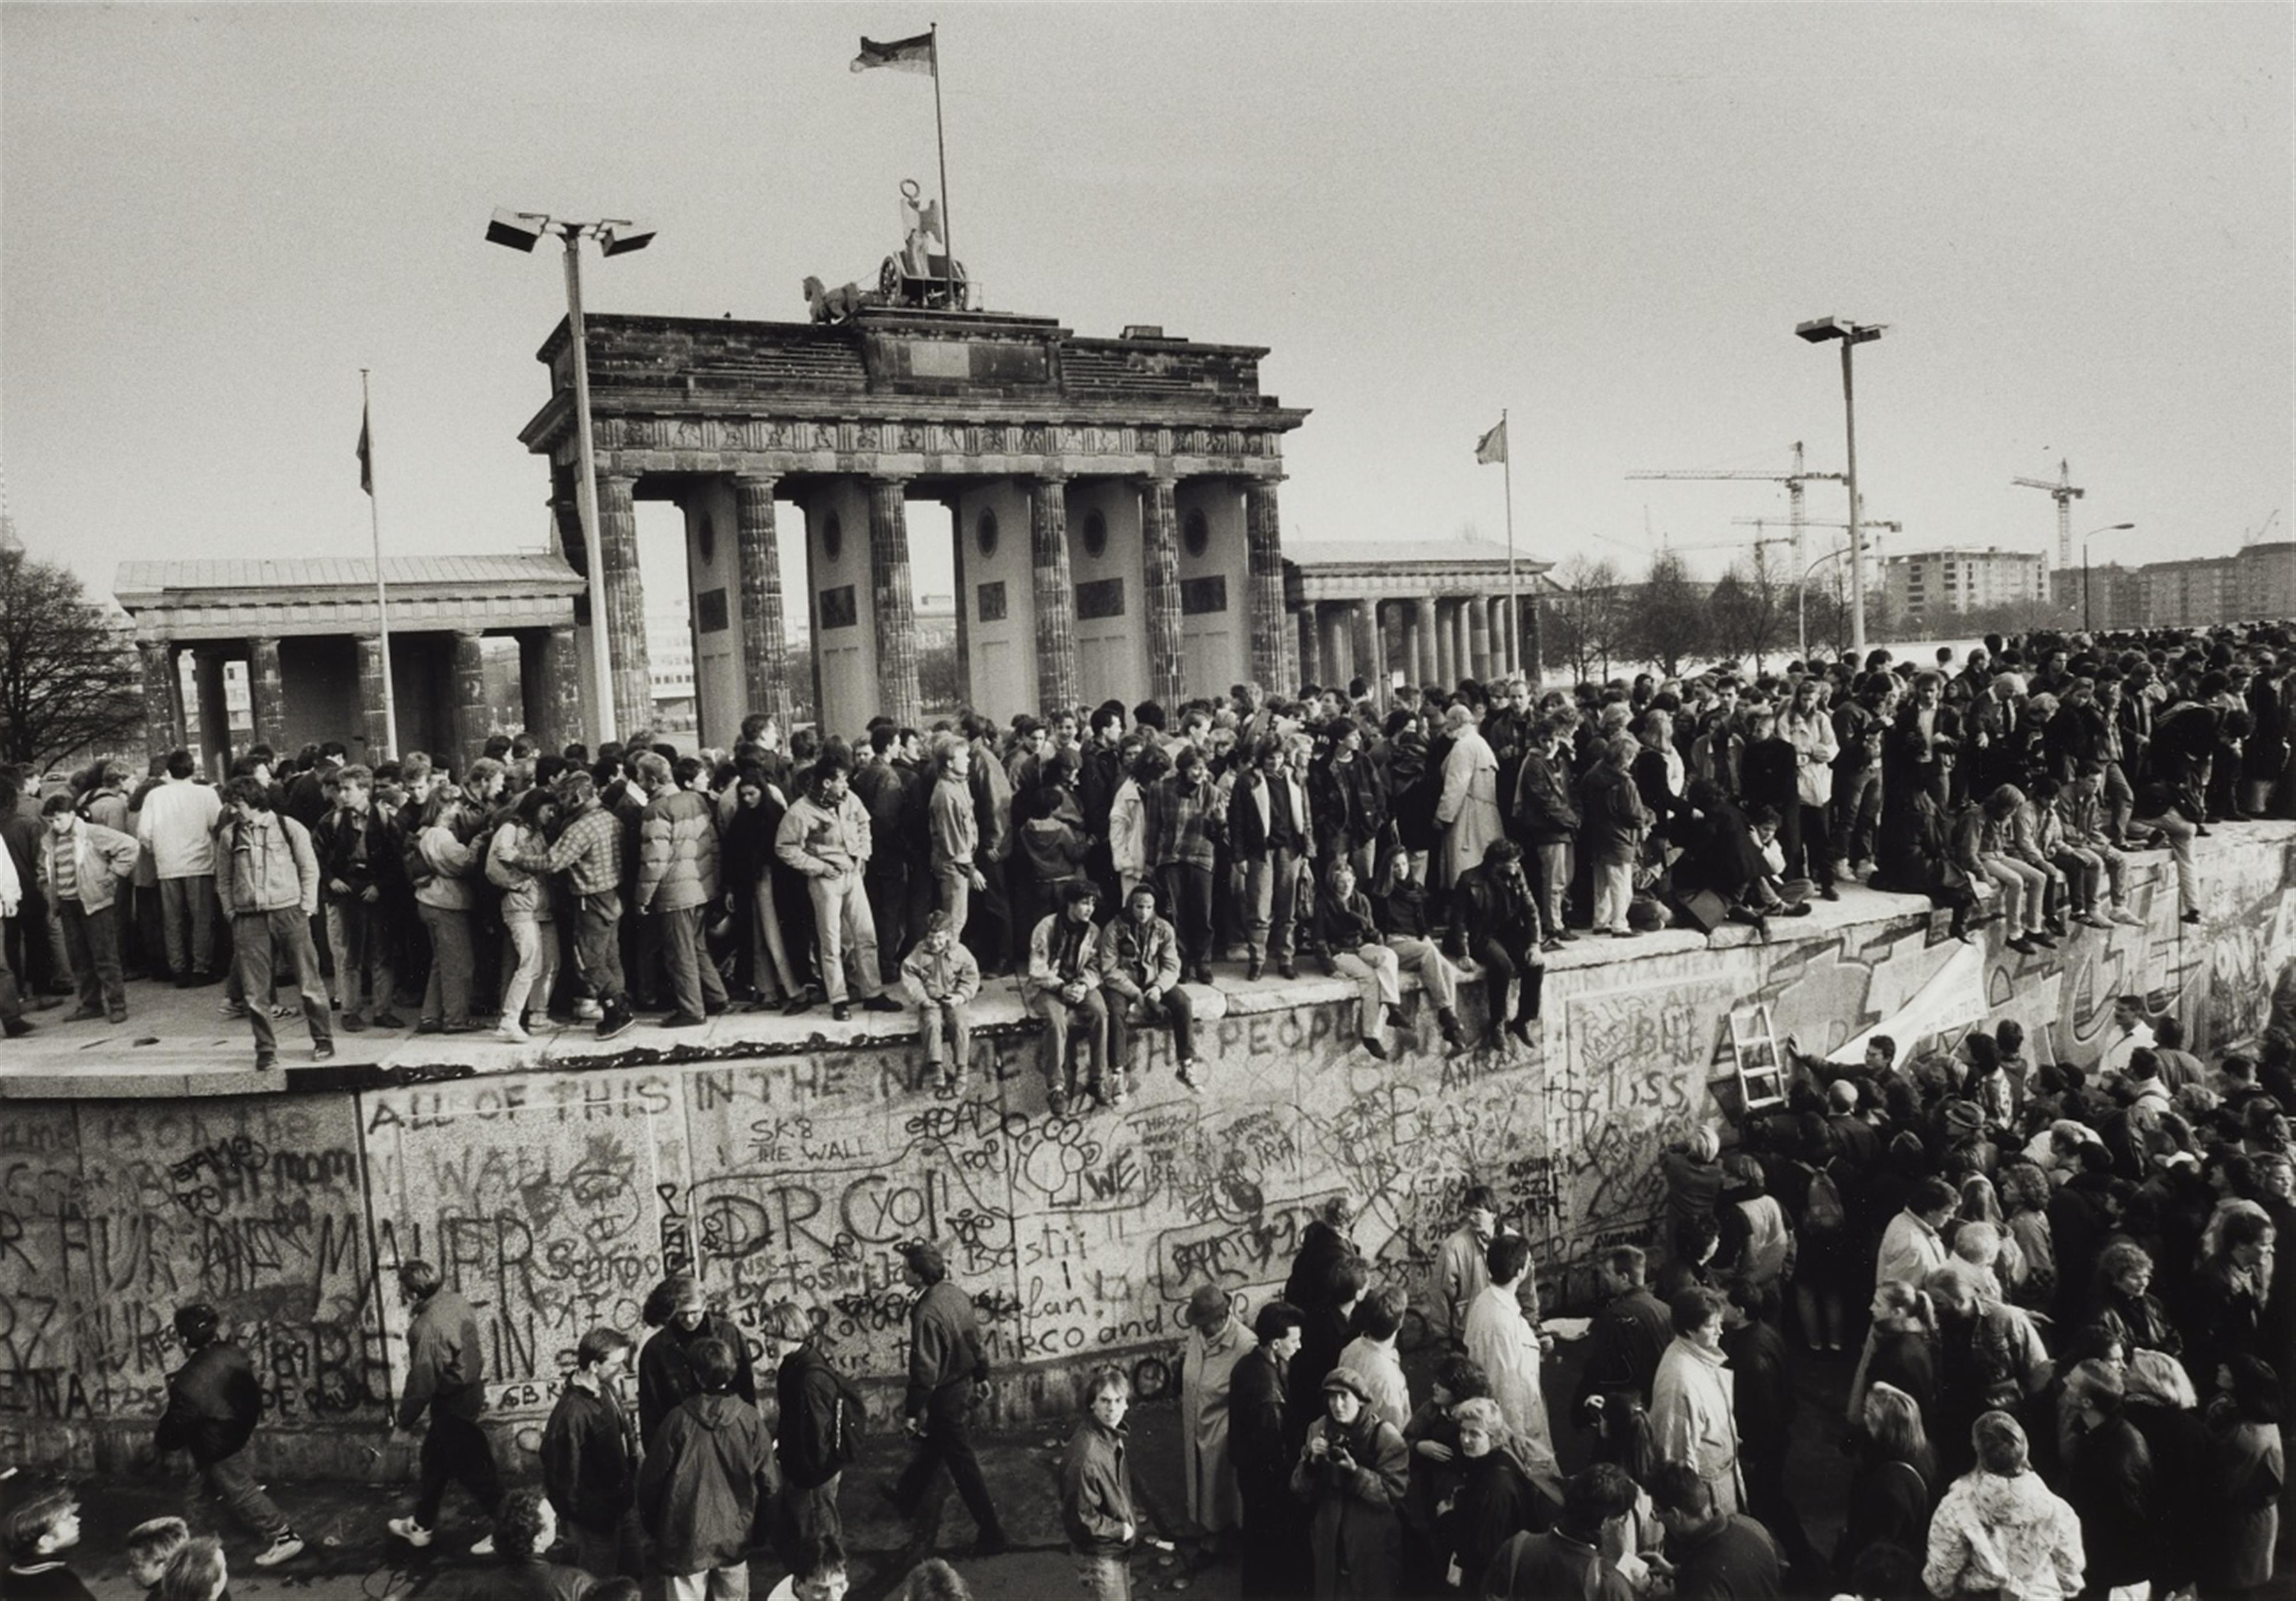 Barbara Klemm - Fall der Mauer, Berlin, 10. November 1989 - image-1